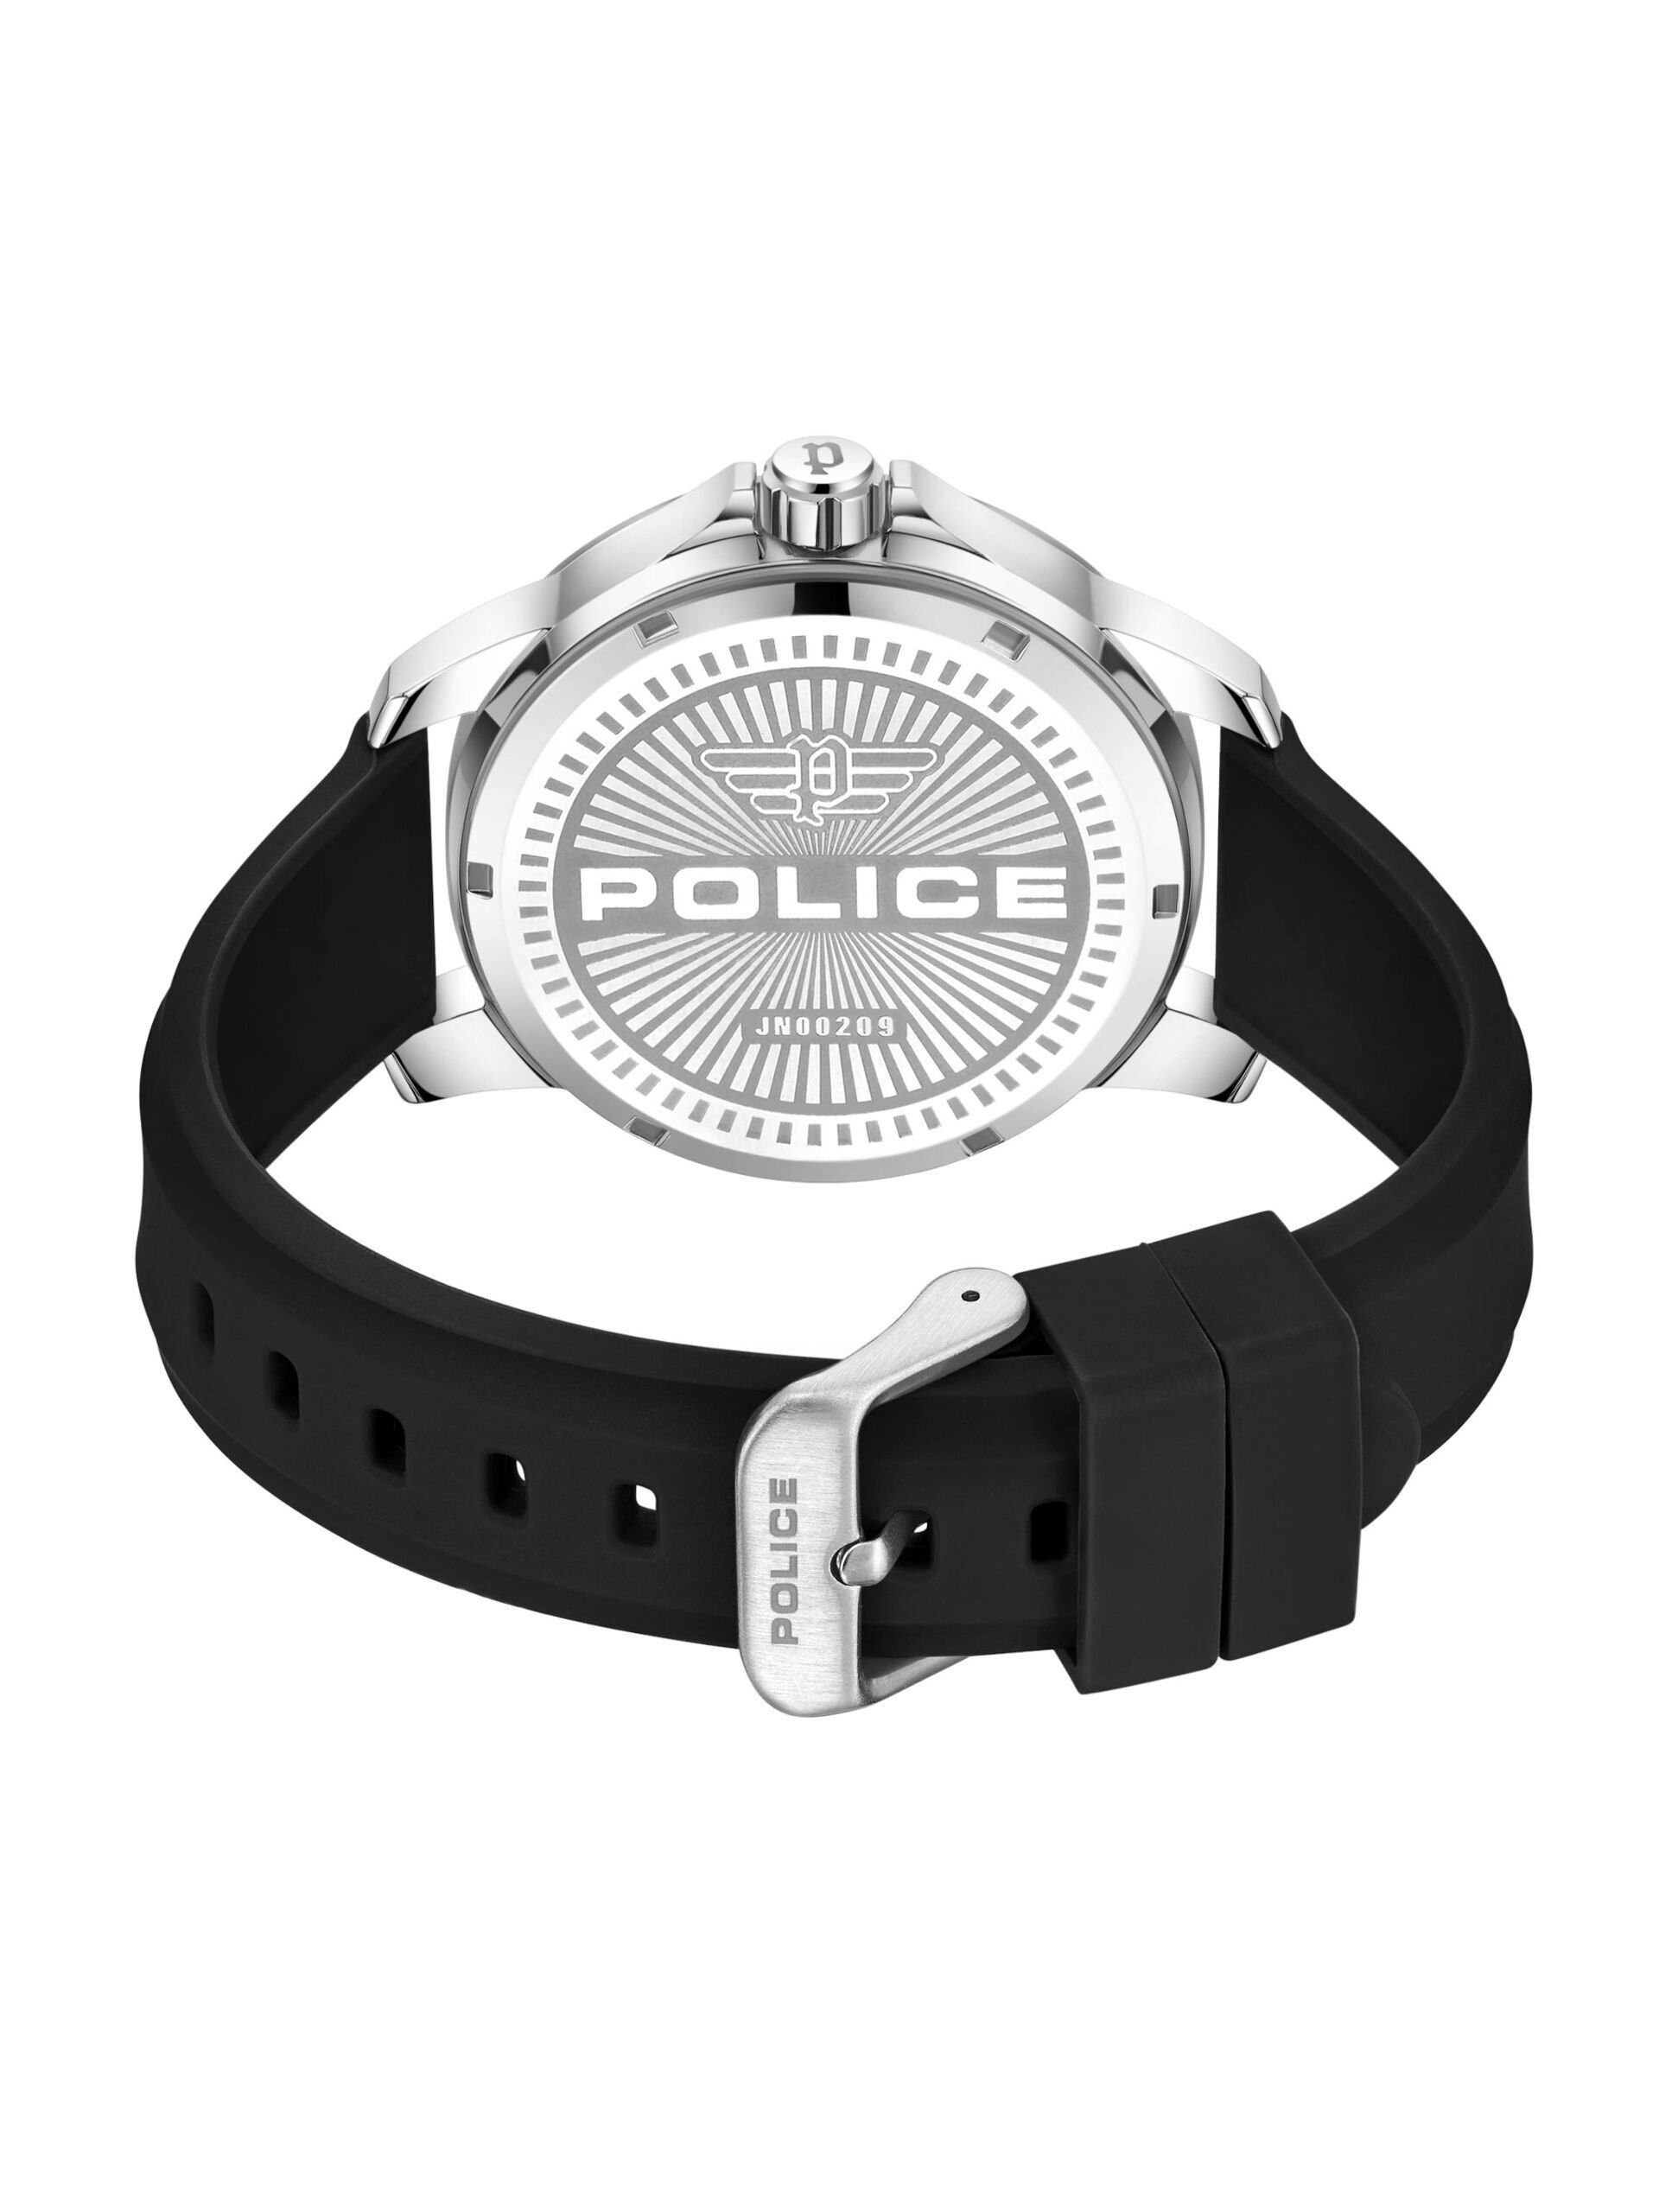 Silikonarmband MENSOR, Flexibles Silikon-Armband, mit Police und hochwertigem Haarband widerstandsfähiges